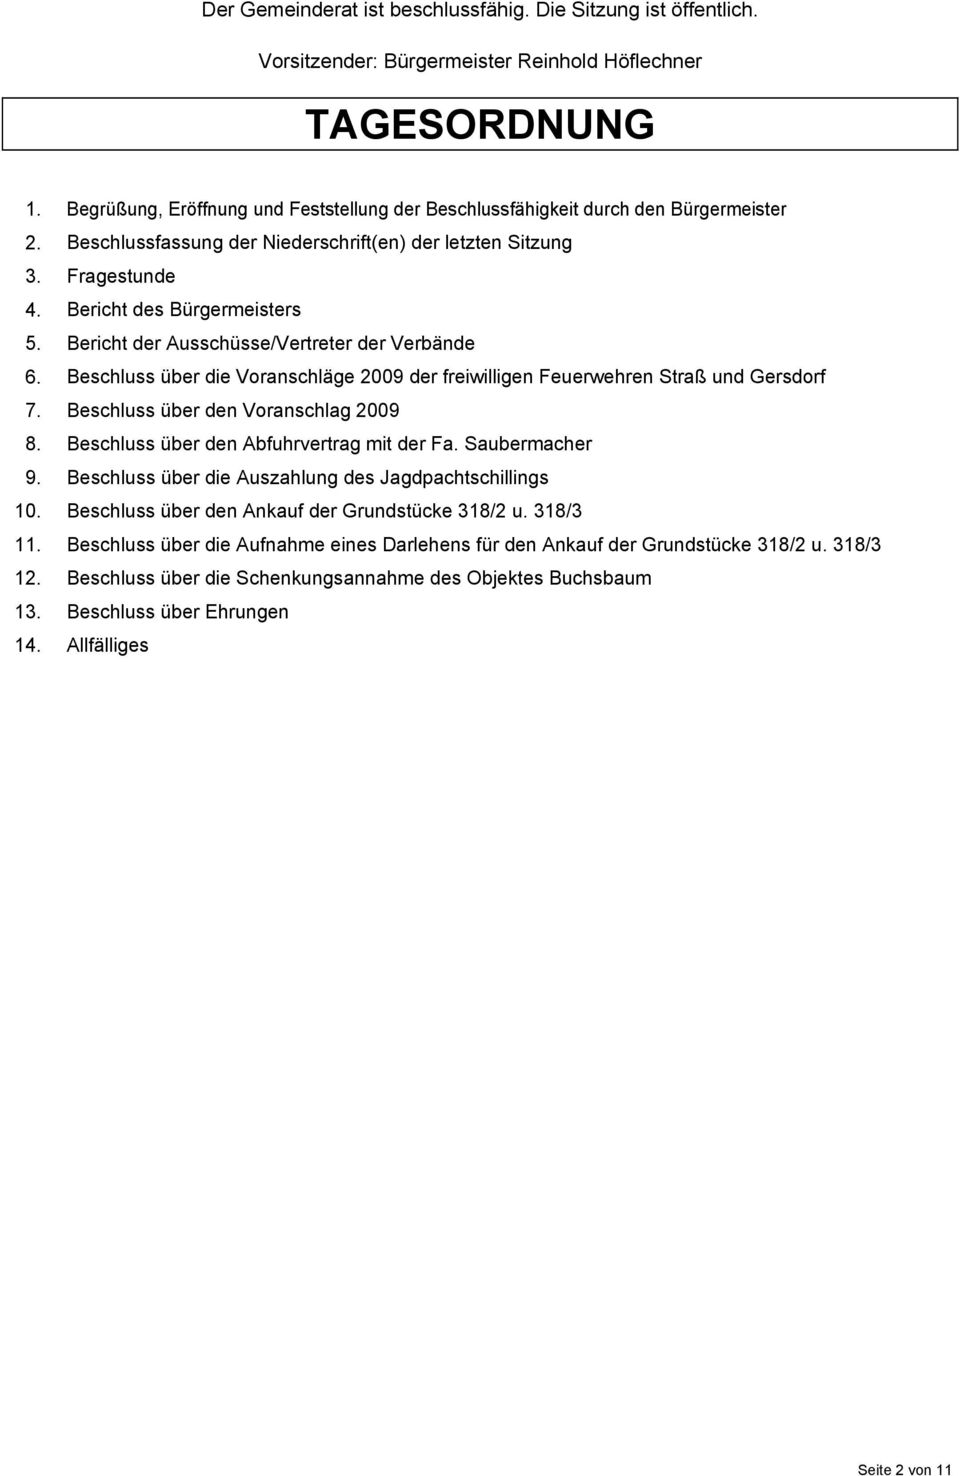 Bericht der Ausschüsse/Vertreter der Verbände 6. Beschluss über die Voranschläge 2009 der freiwilligen Feuerwehren Straß und Gersdorf 7. Beschluss über den Voranschlag 2009 8.